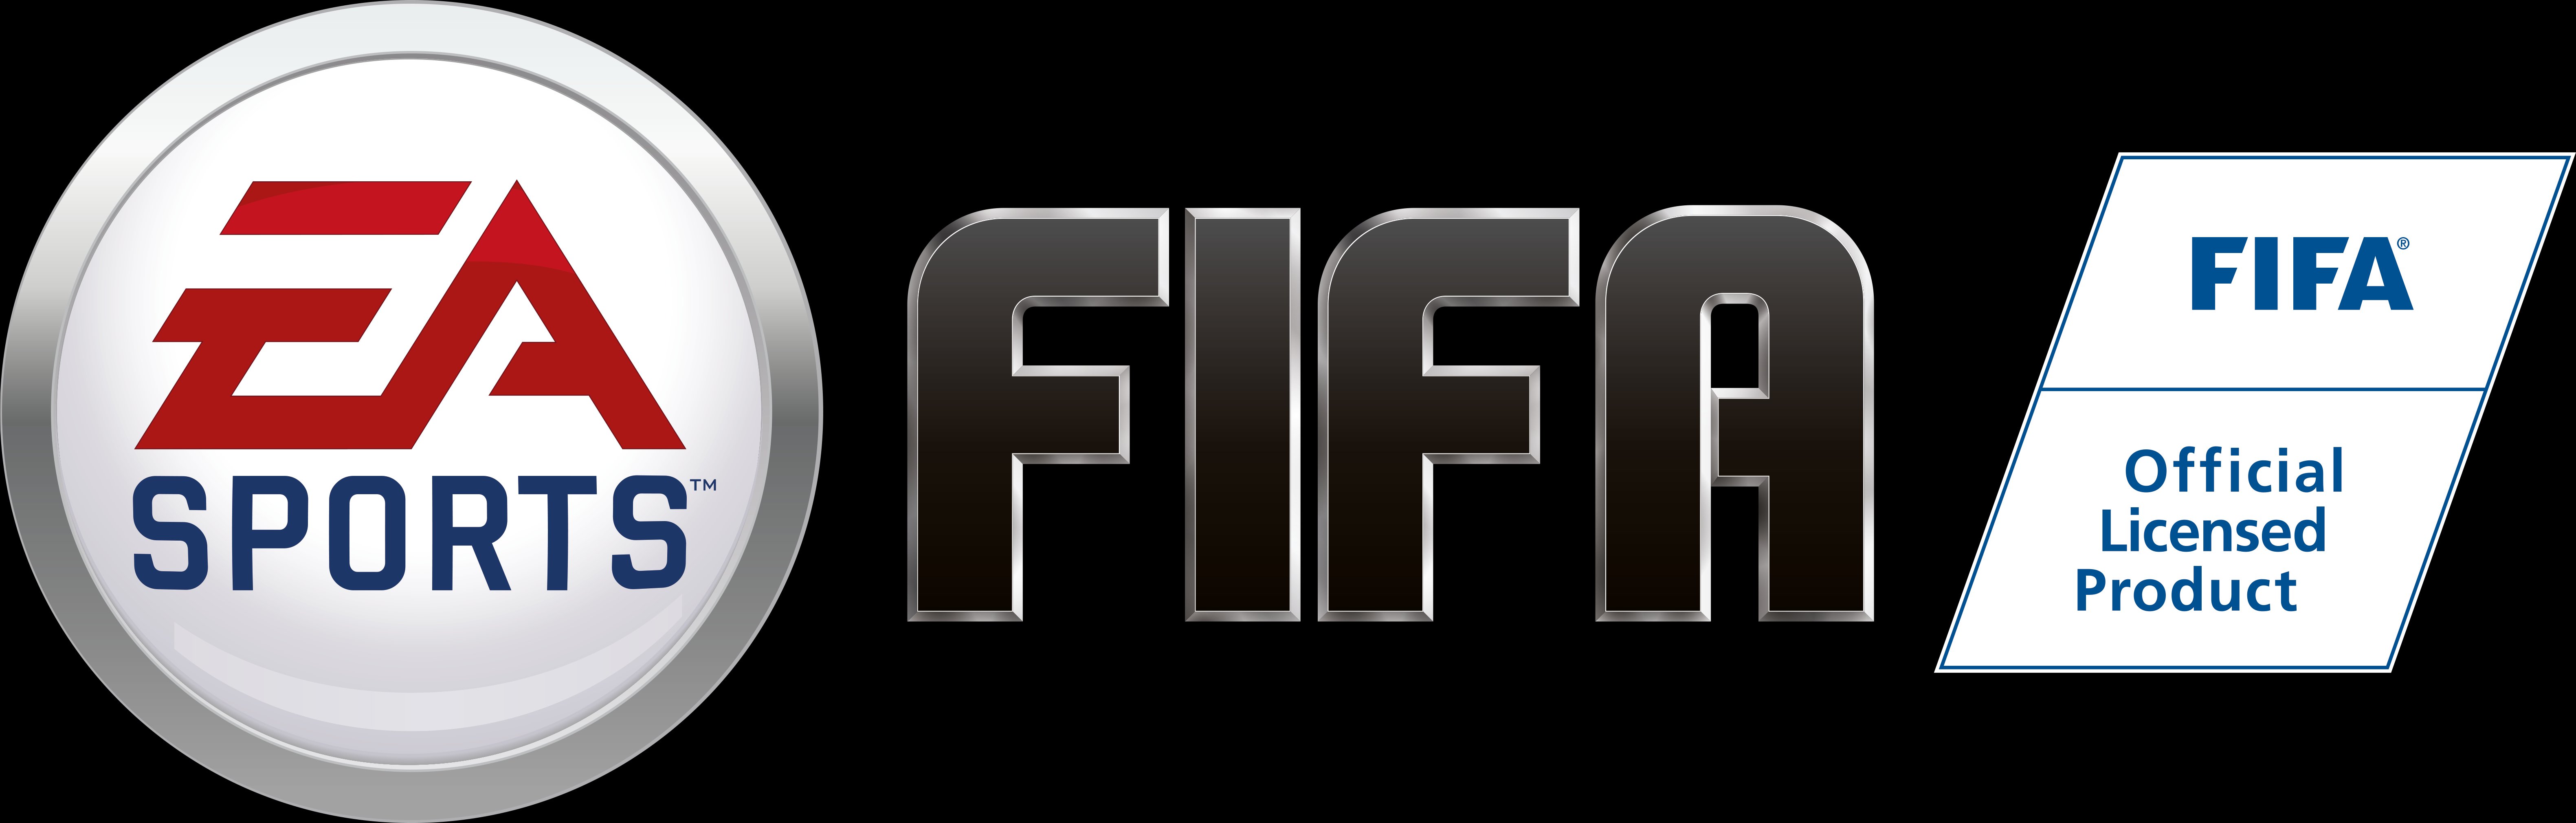 EA SPORTS FIFA Logo